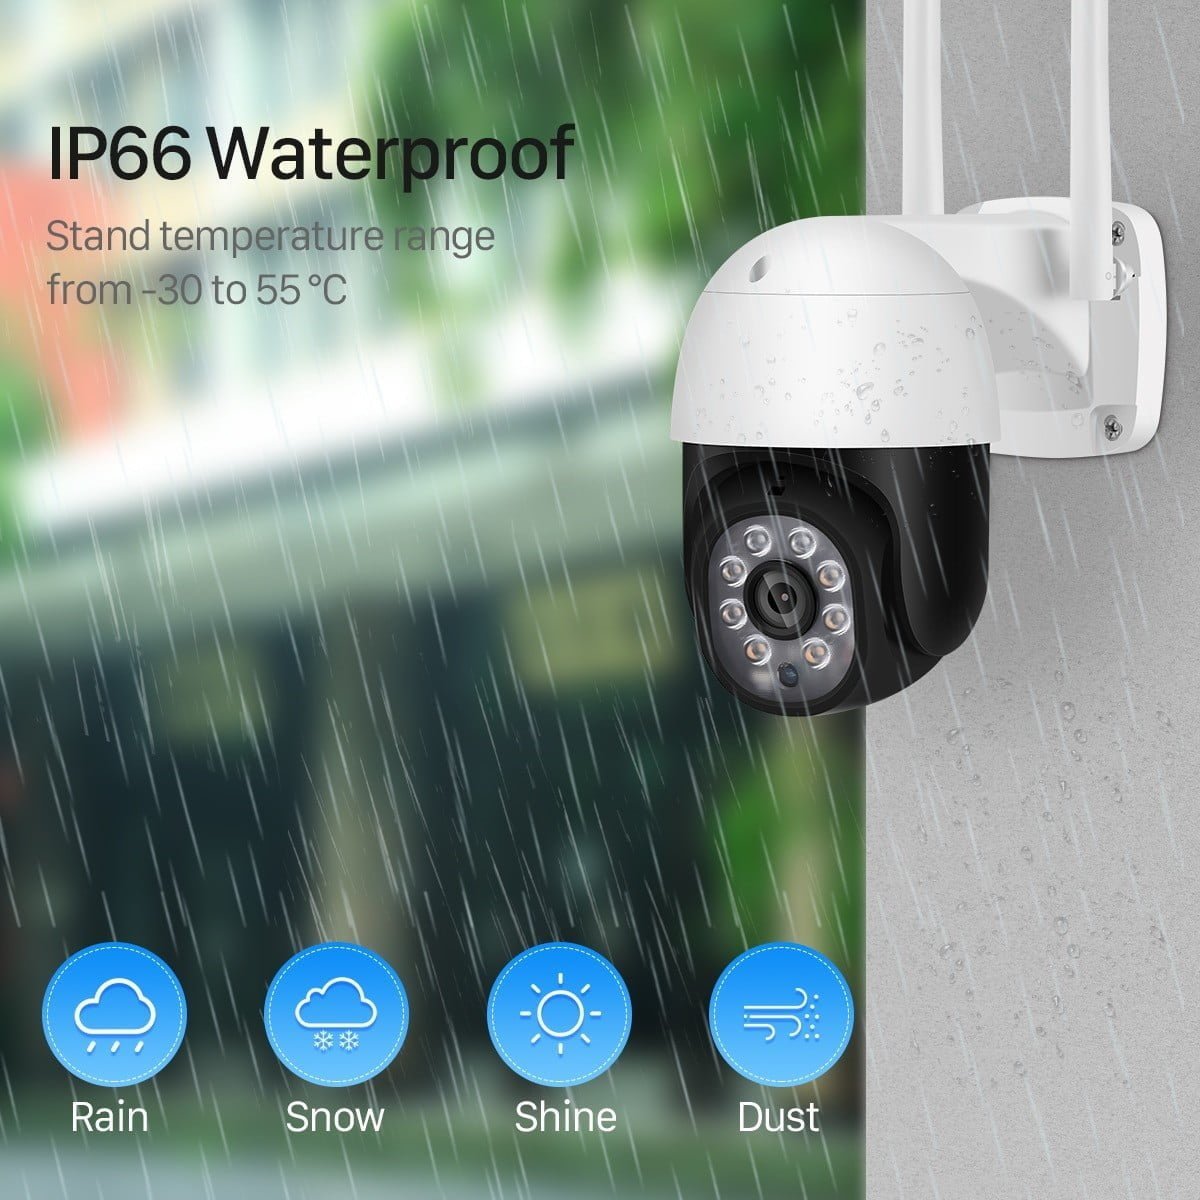 ip66 waterproof works on -30c